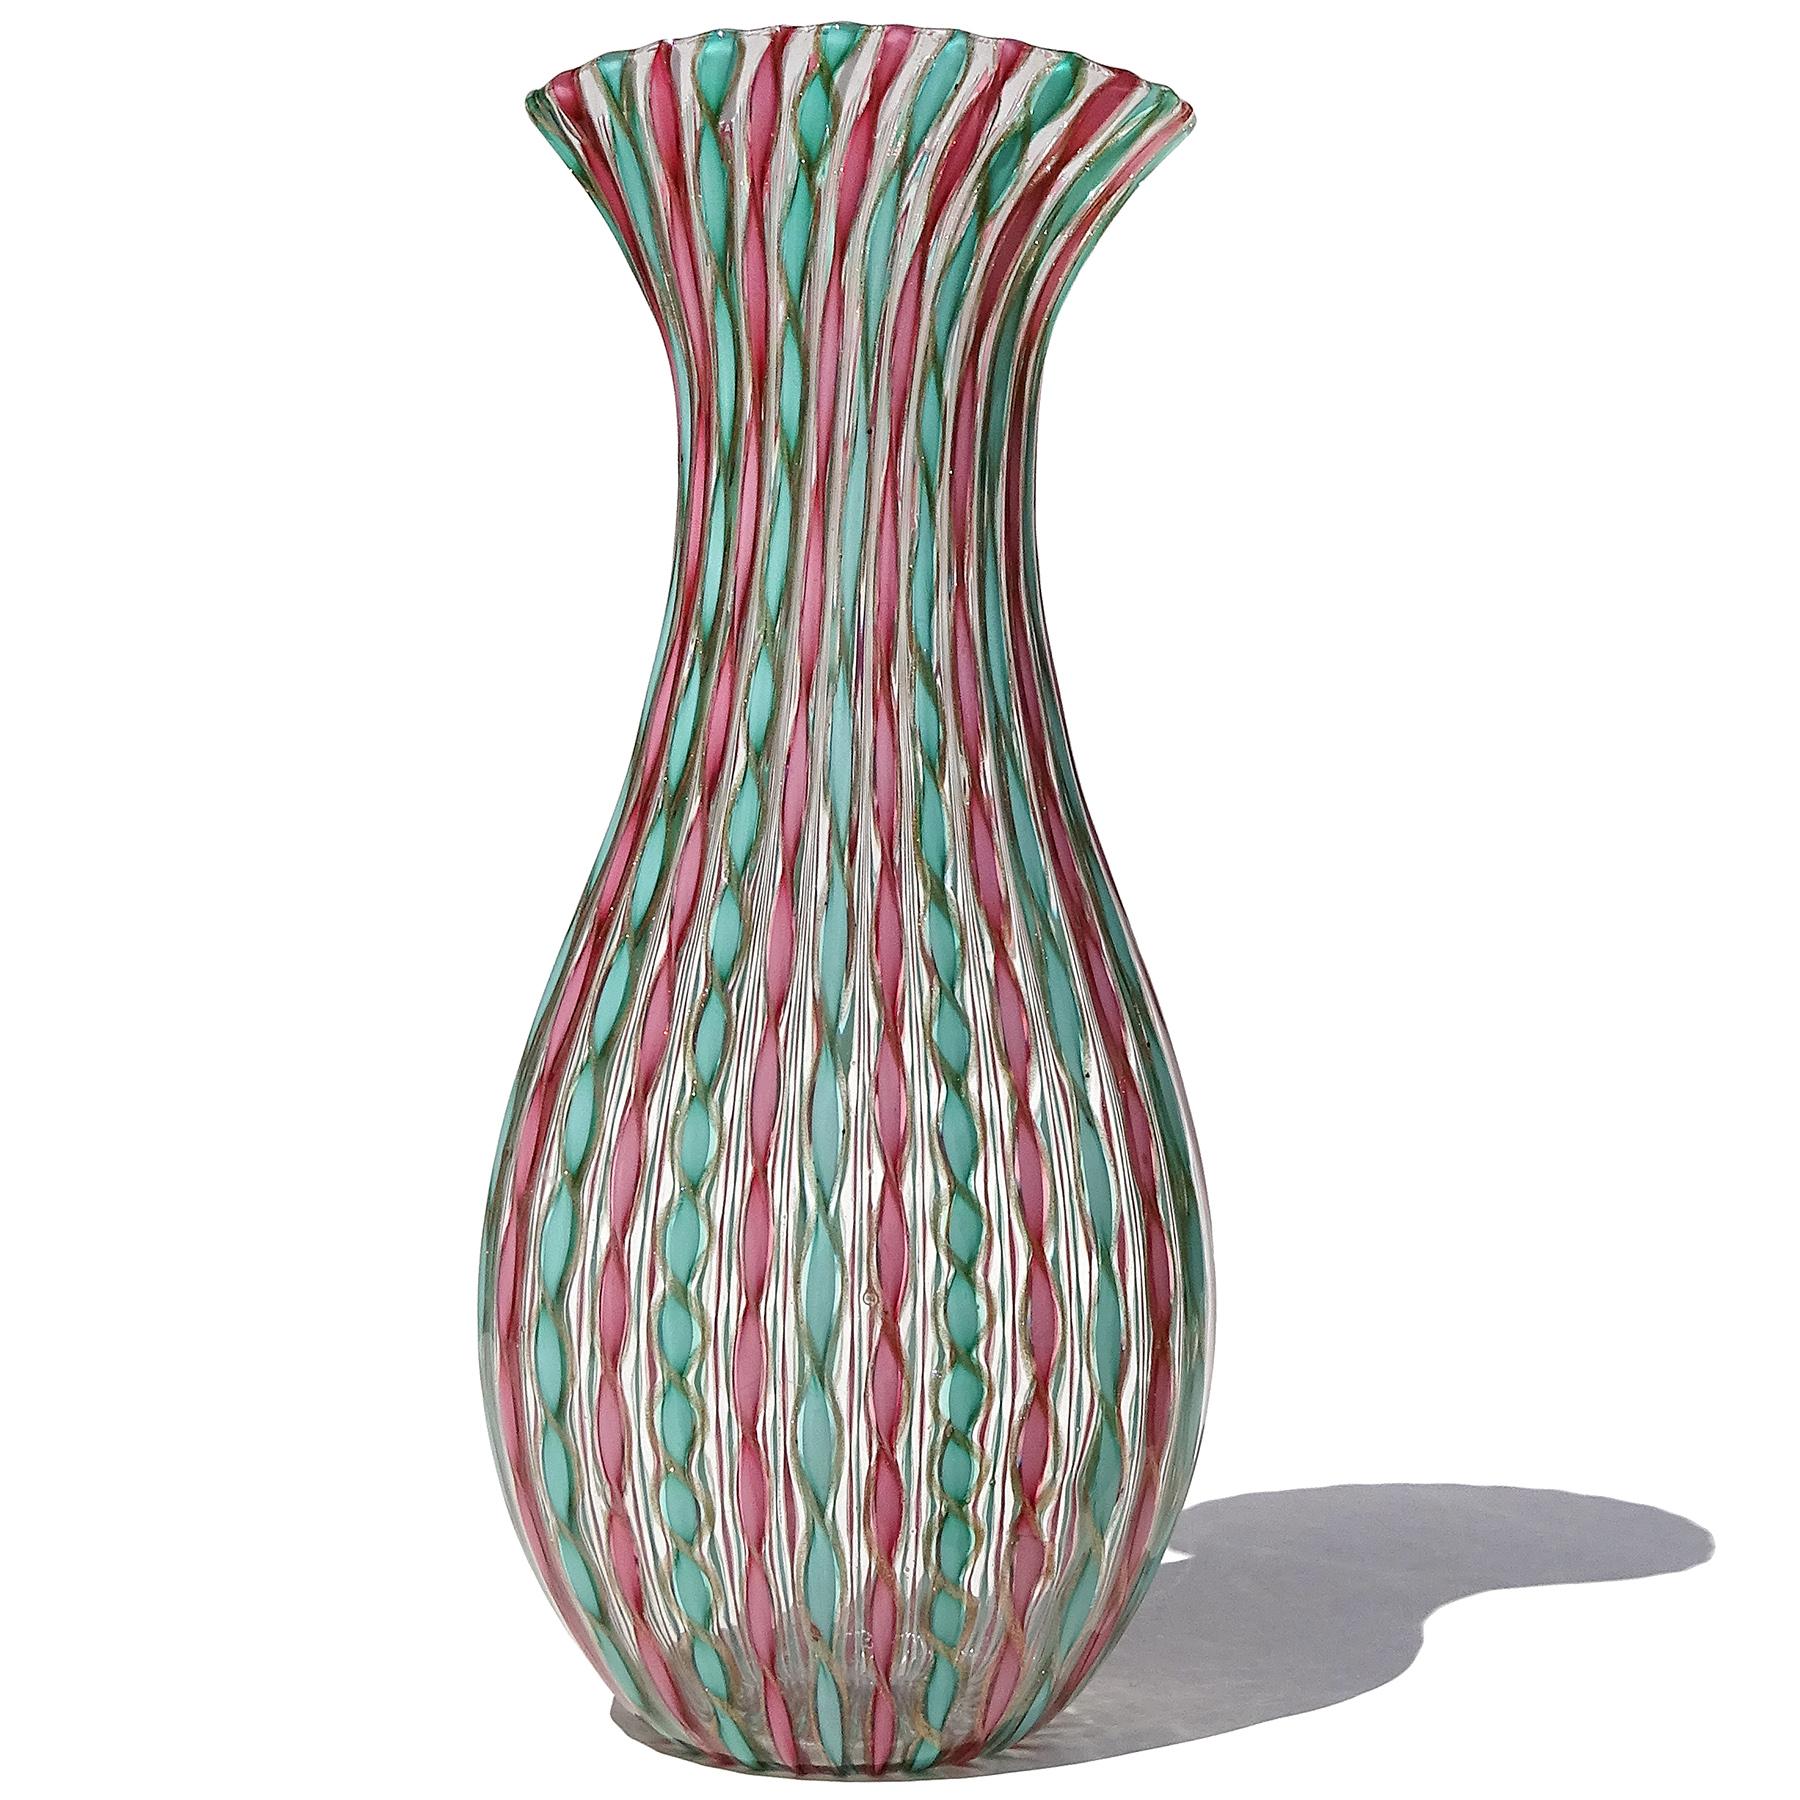 Schöne Vintage Murano mundgeblasen teal grün, rosa und Kupfer Twisting Bänder italienische Kunst Glas Blumenvase. Geschaffen nach dem Vorbild der Firma Fratelli Toso und des Designers Dino Martens. Die Vase hat ein abwechselndes Muster aus